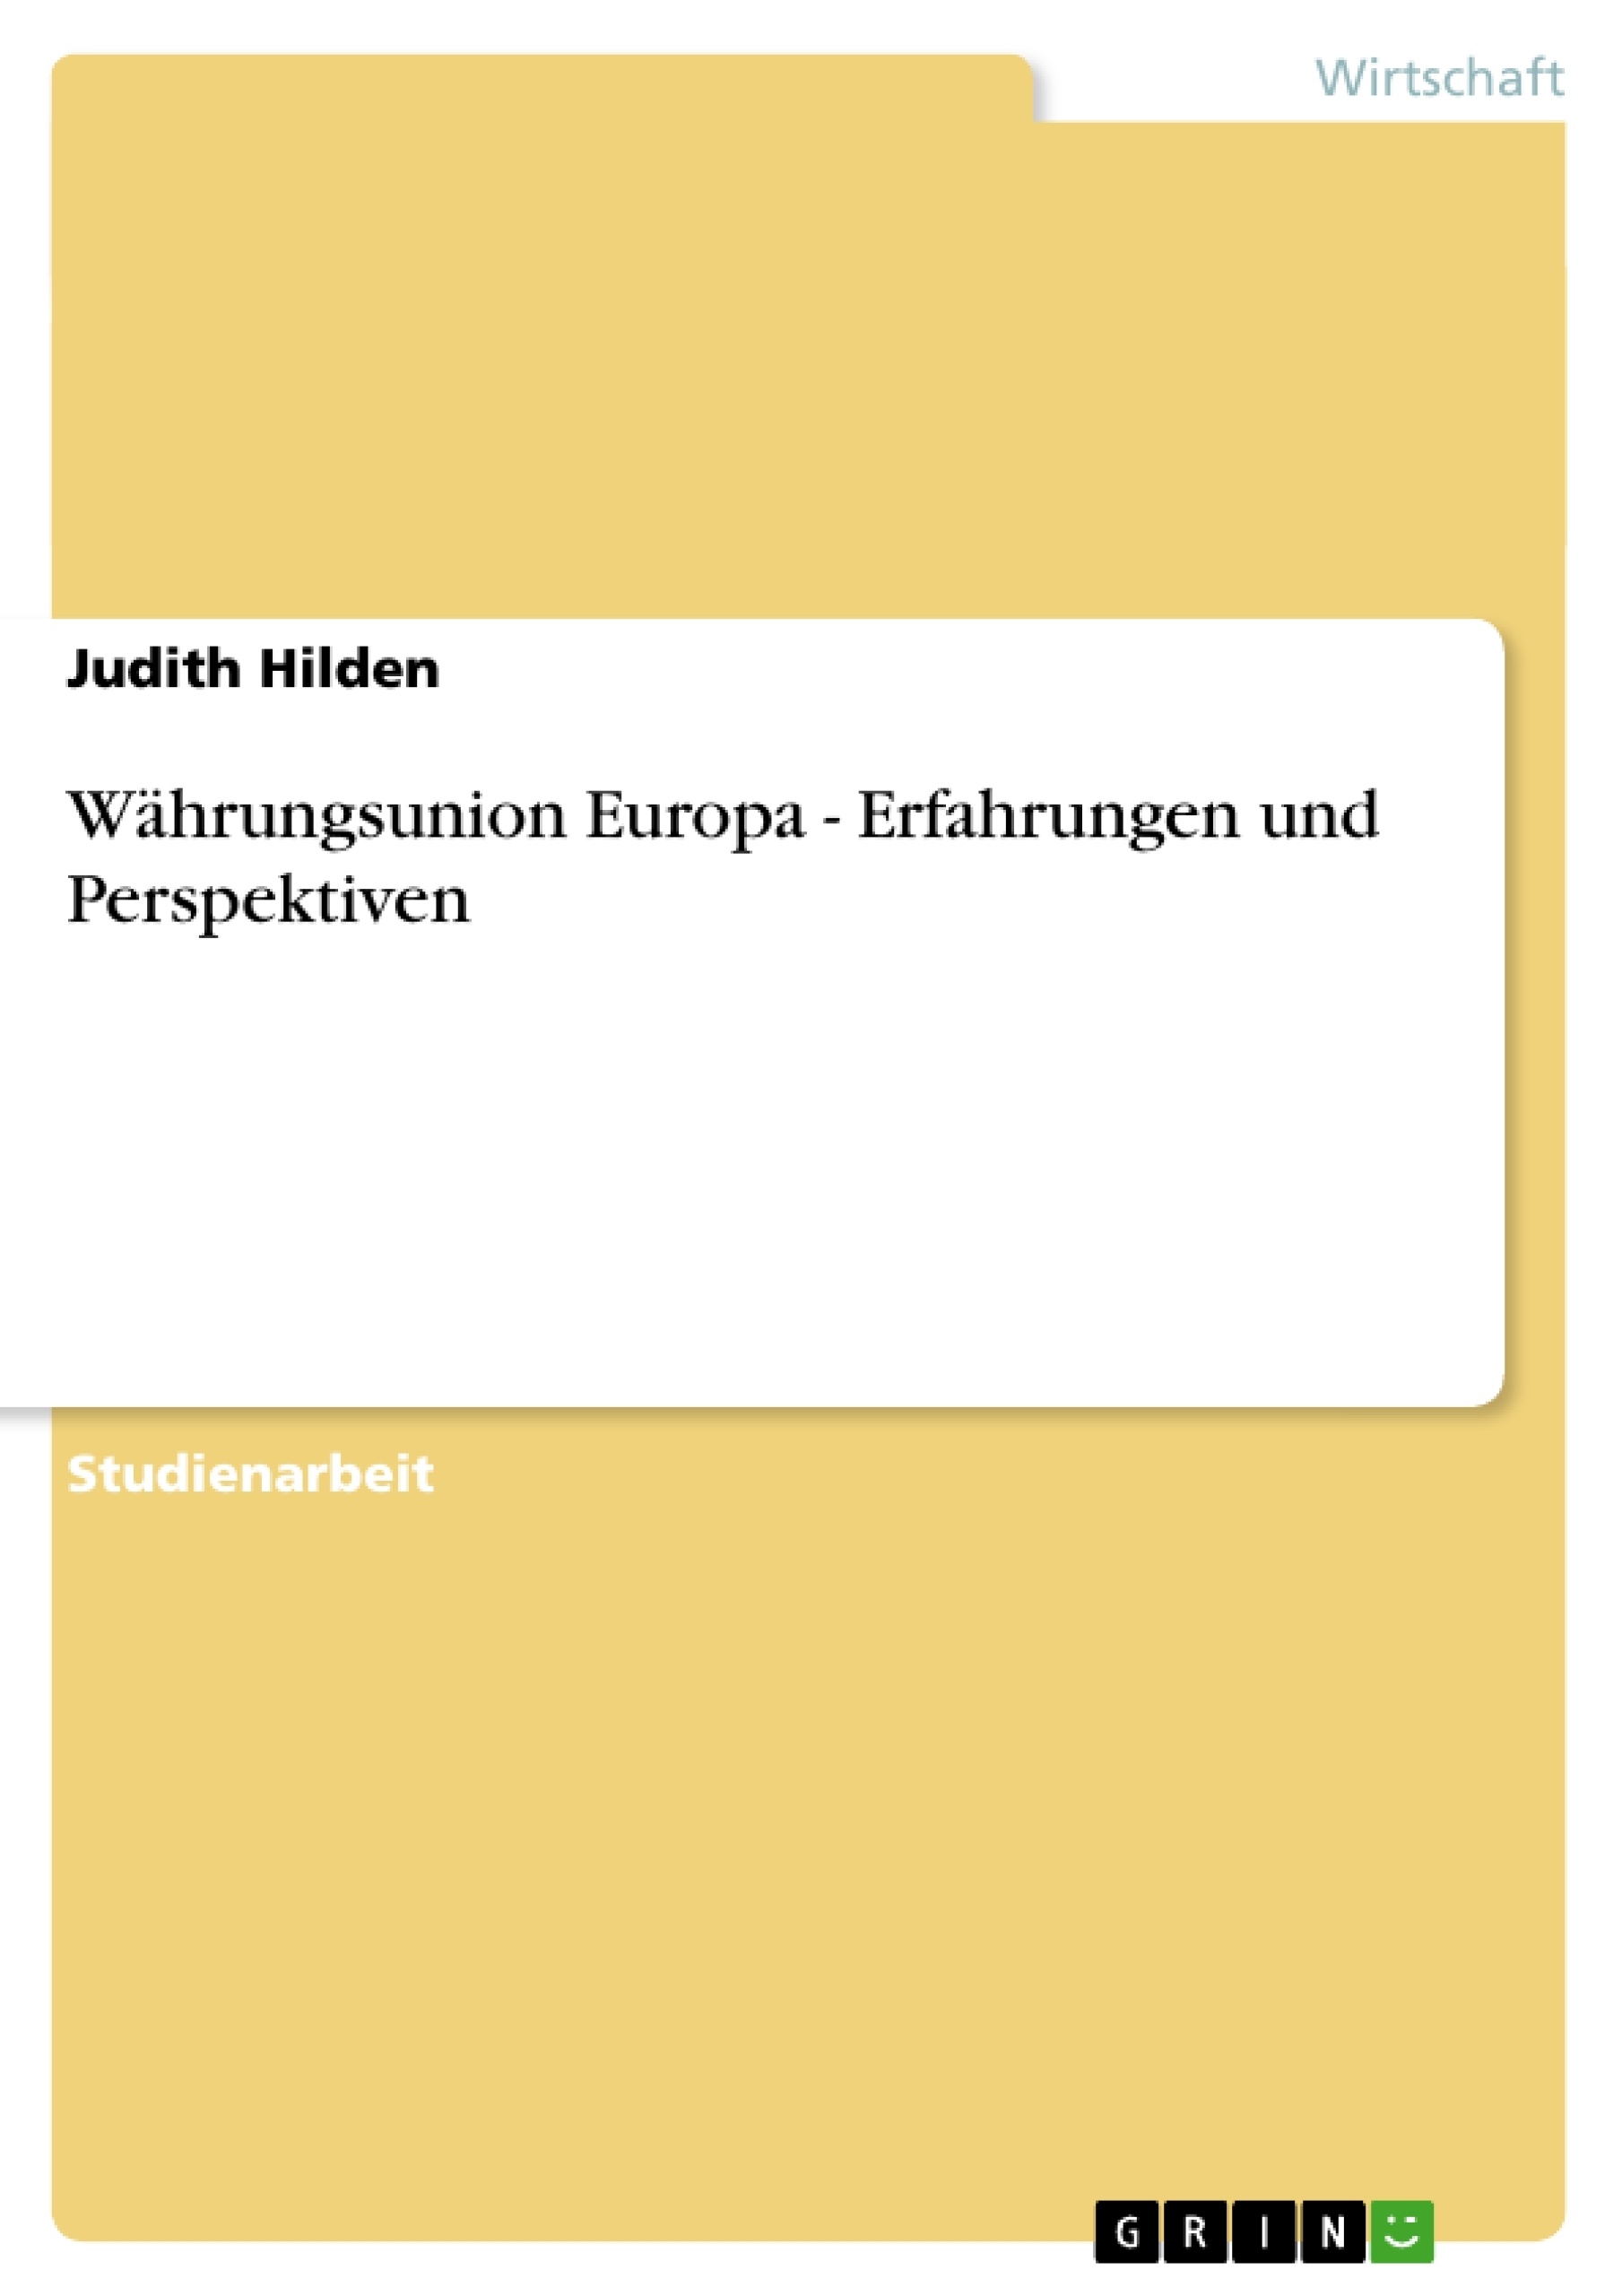 Titel: Währungsunion Europa - Erfahrungen und Perspektiven